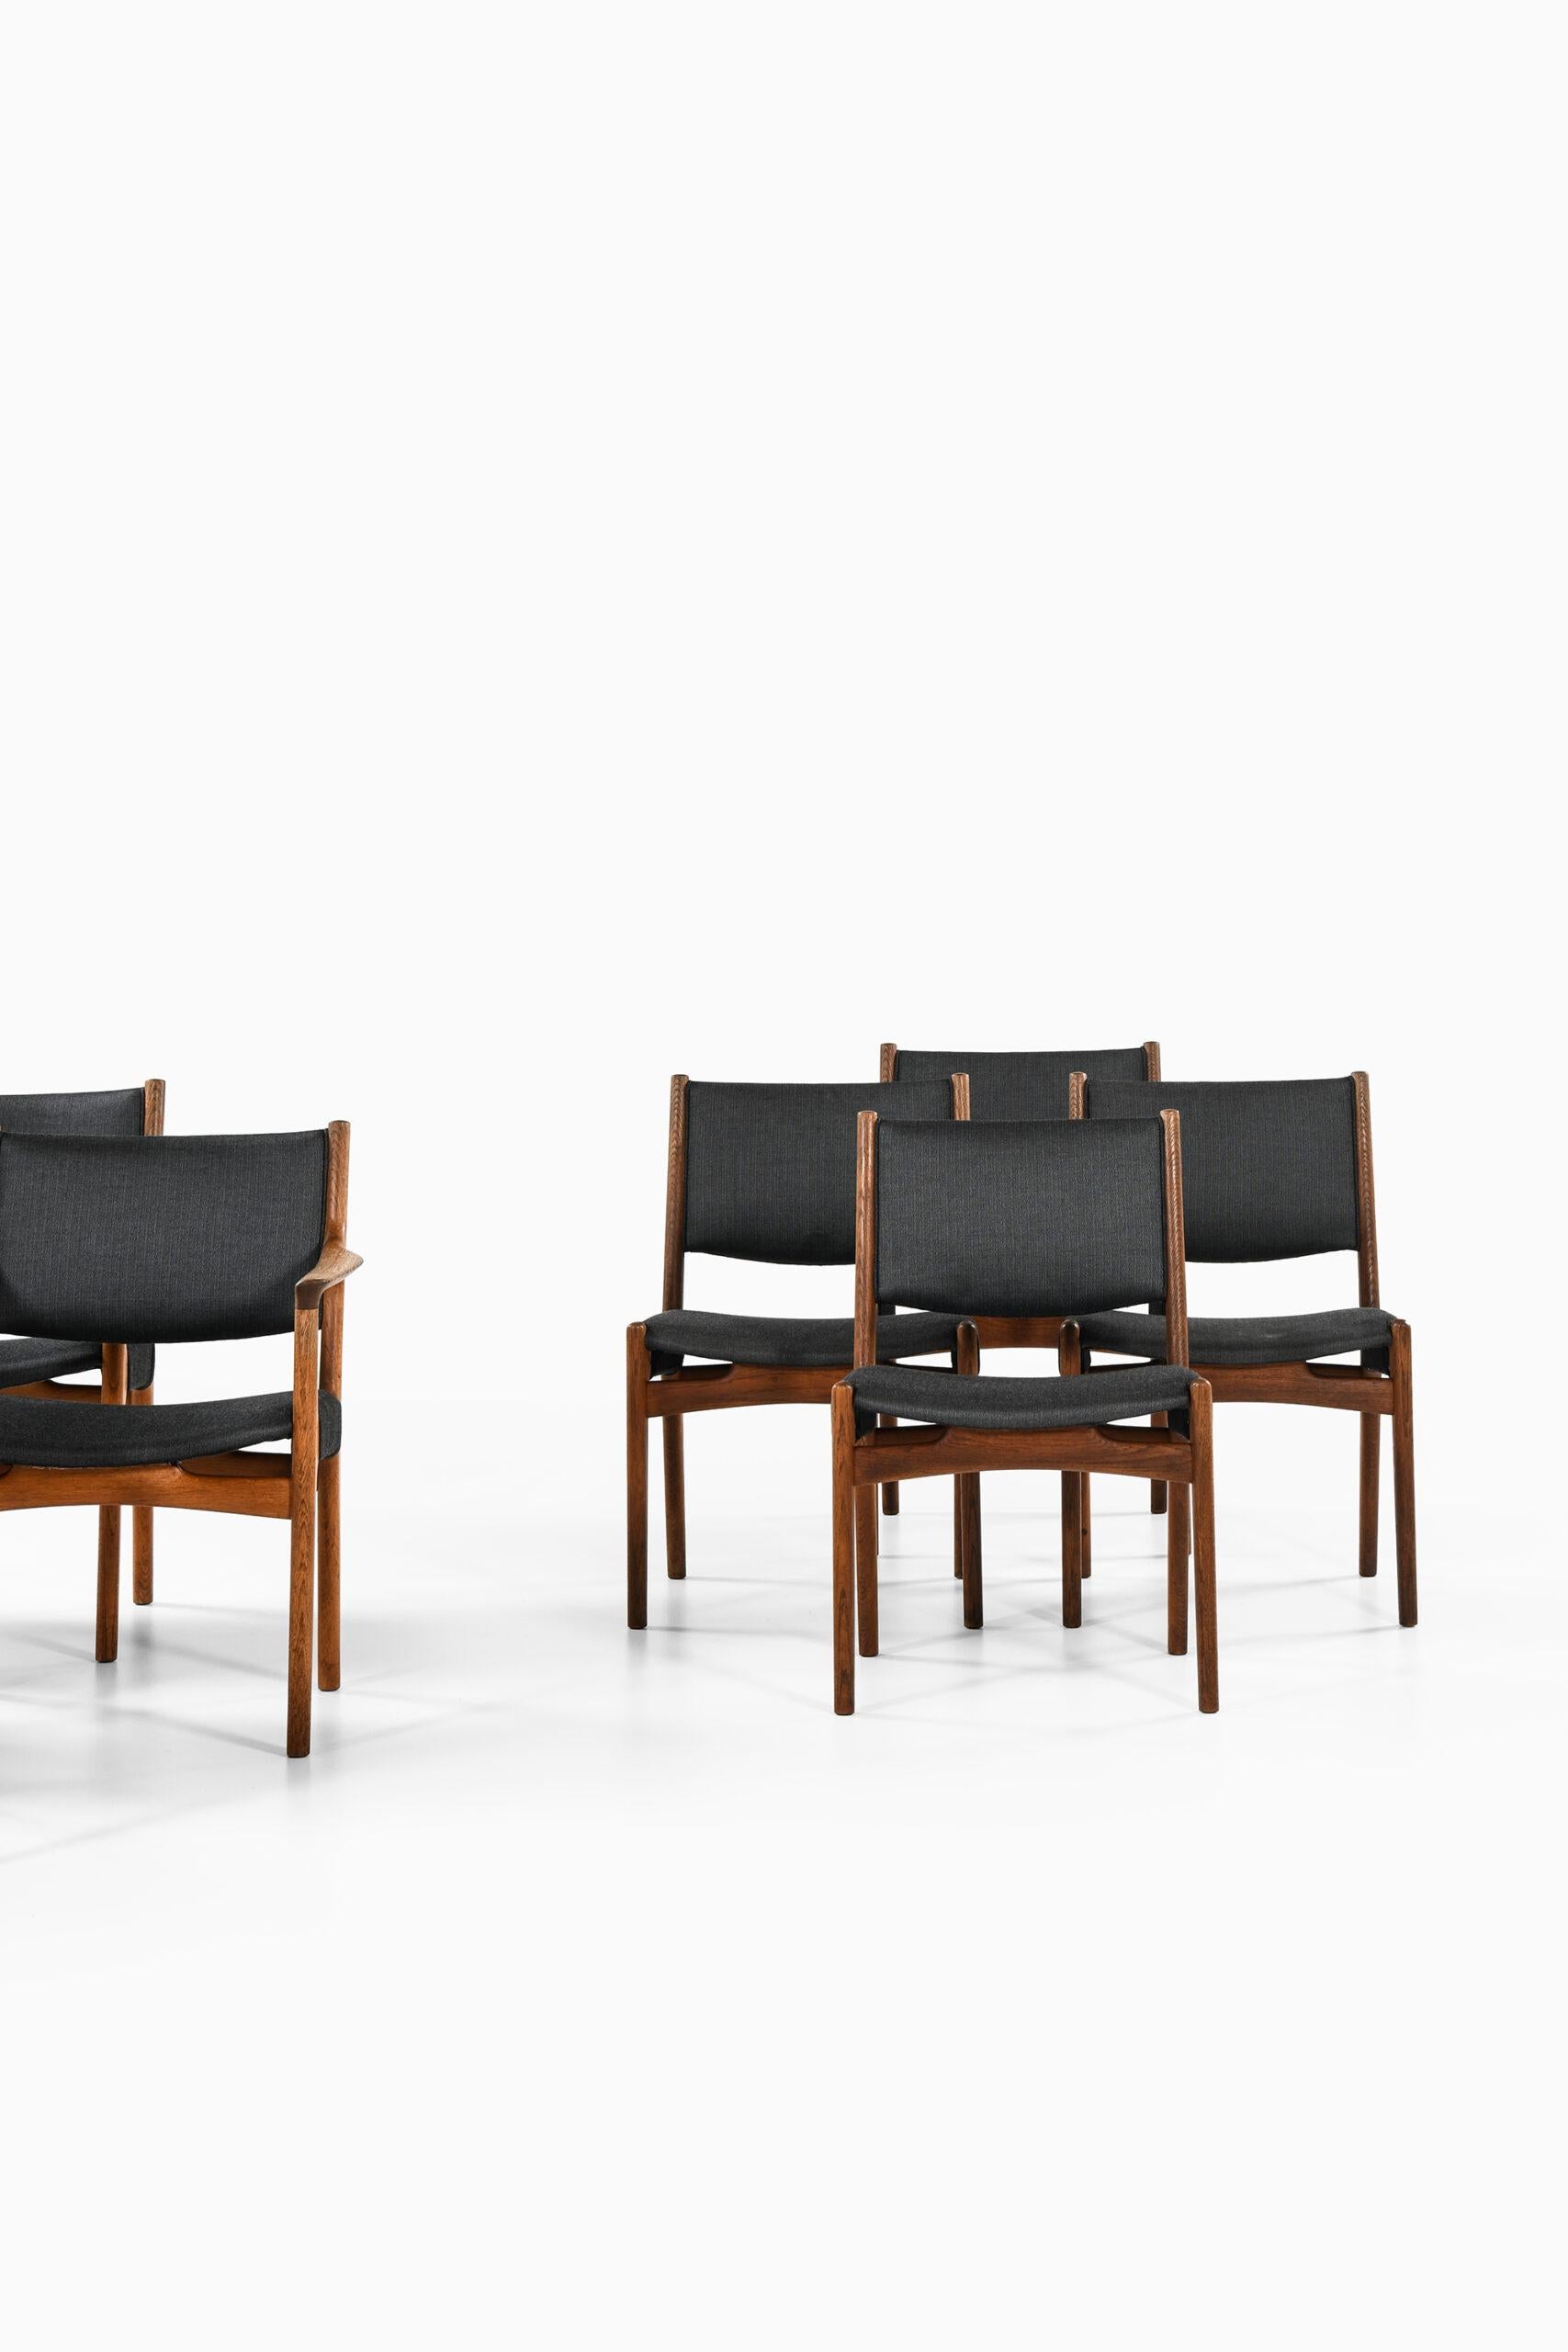 Scandinavian Modern Hans Wegner Dining Chairs by Cabinetmaker Johannes Hansen in Denmark For Sale